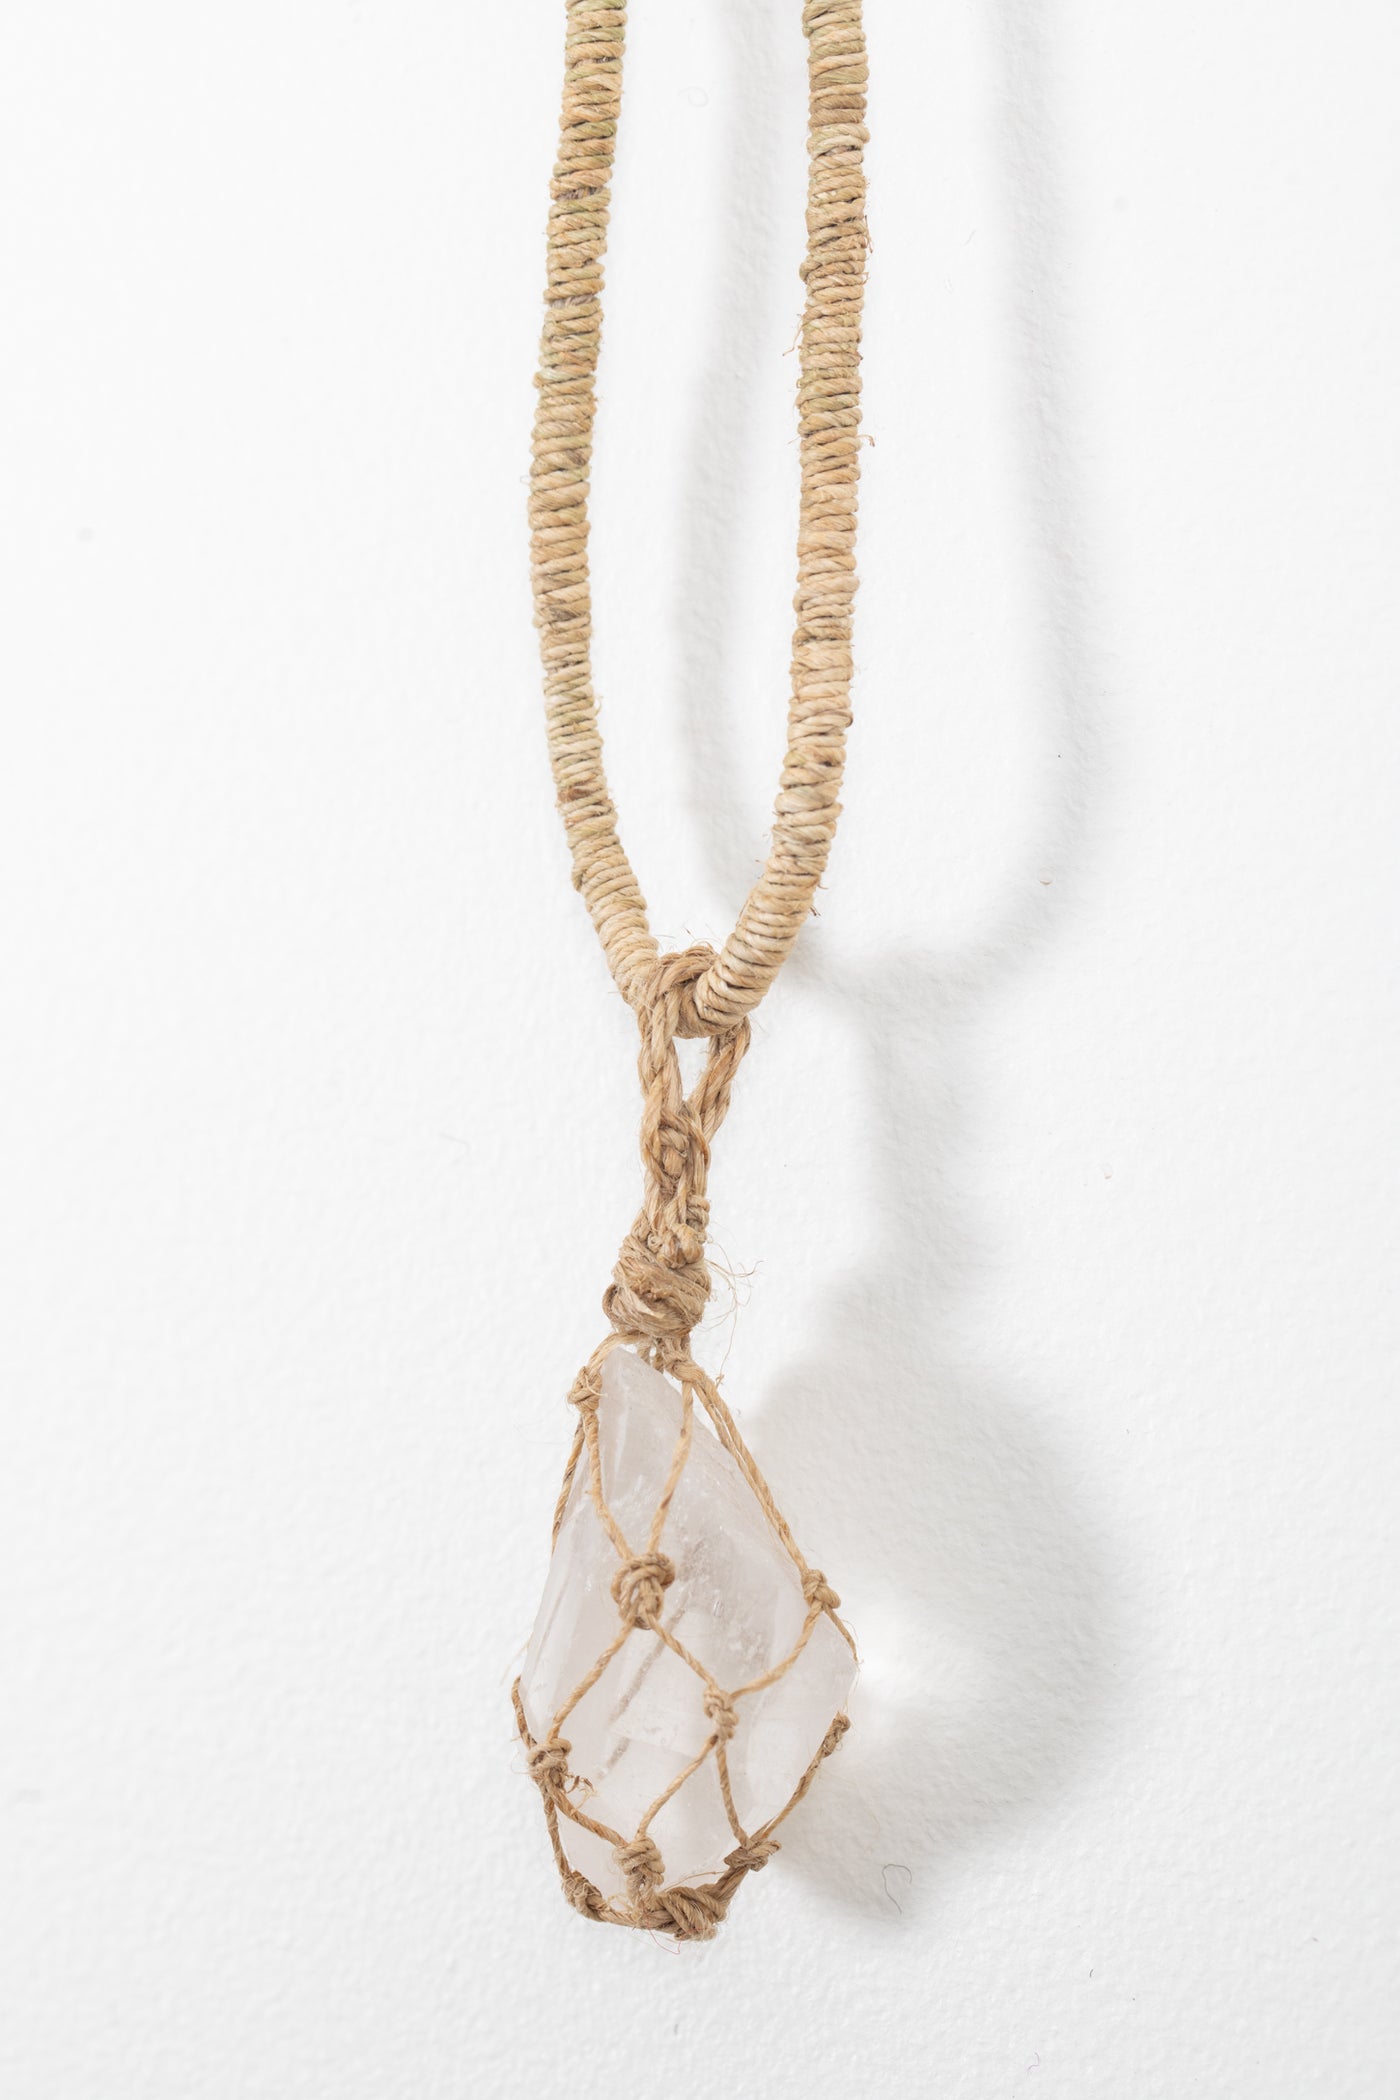 Quartz Crystal Hemp Necklace